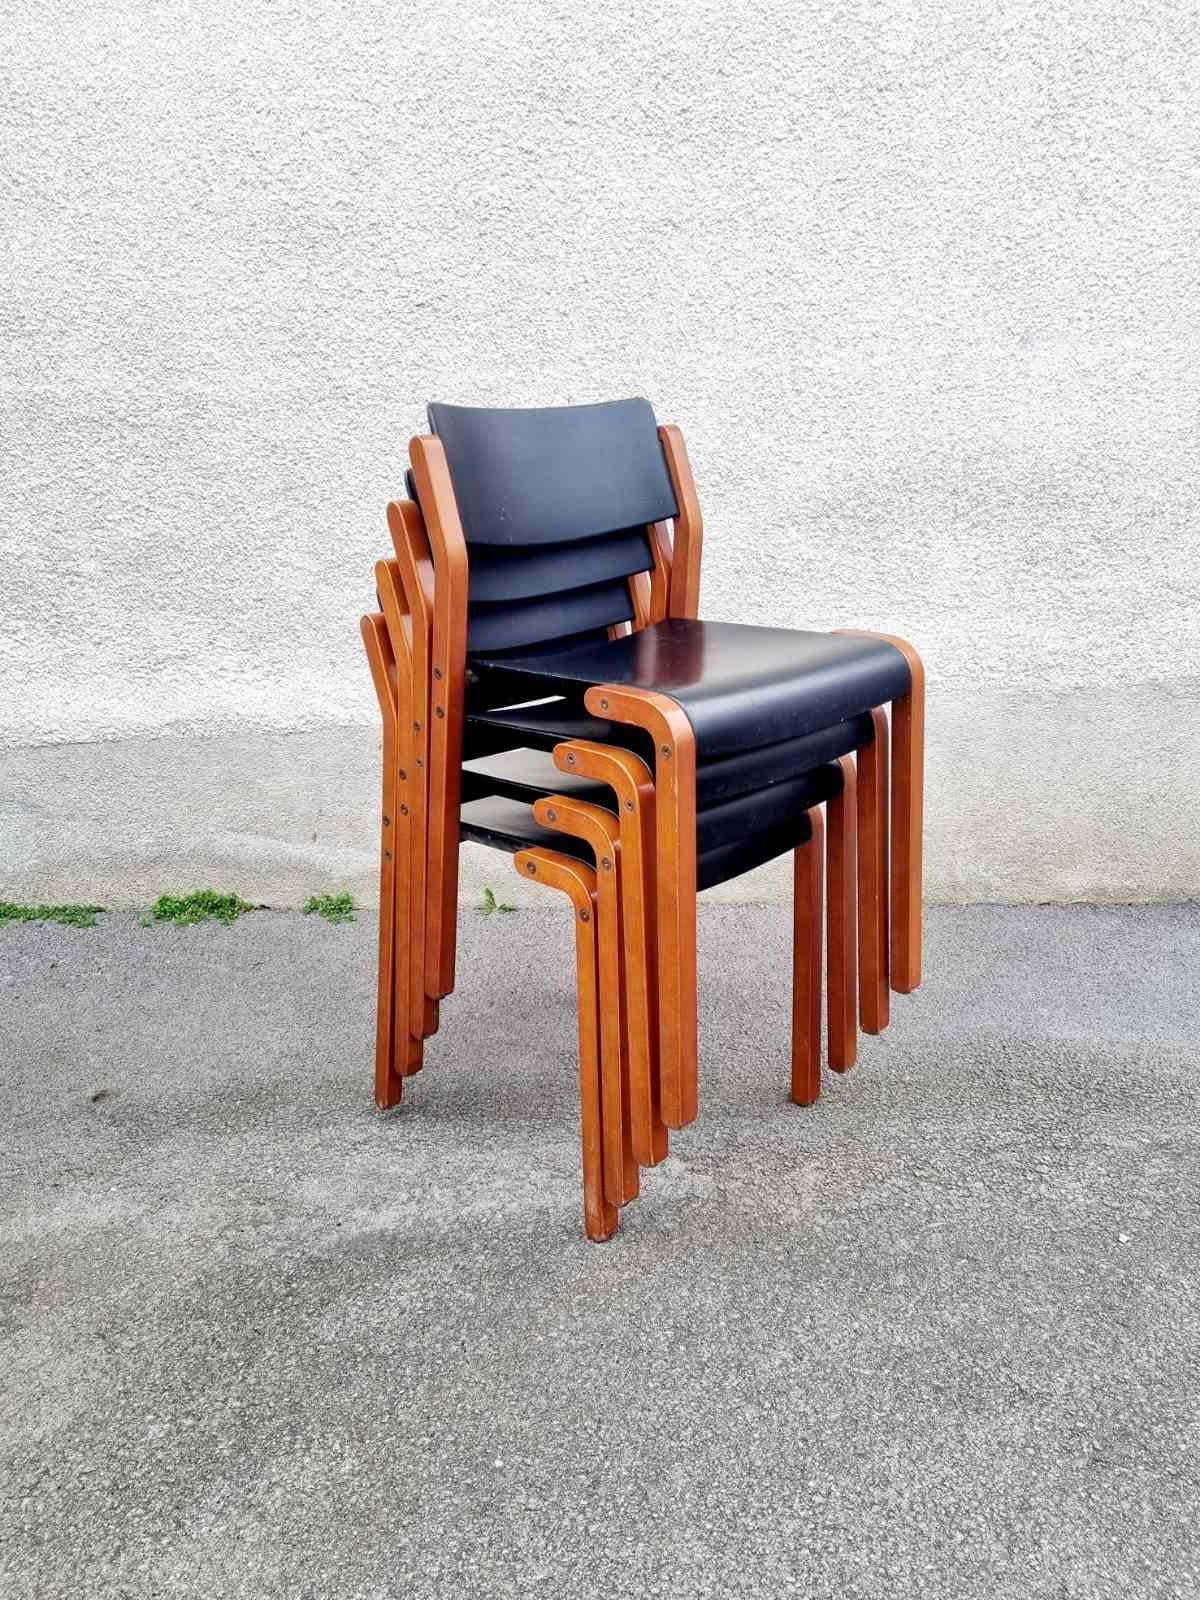 Italian Modern Gruppo Chairs, De Pas, D'Urbino & Lomazzi for Bellato, Italy 80s For Sale 6